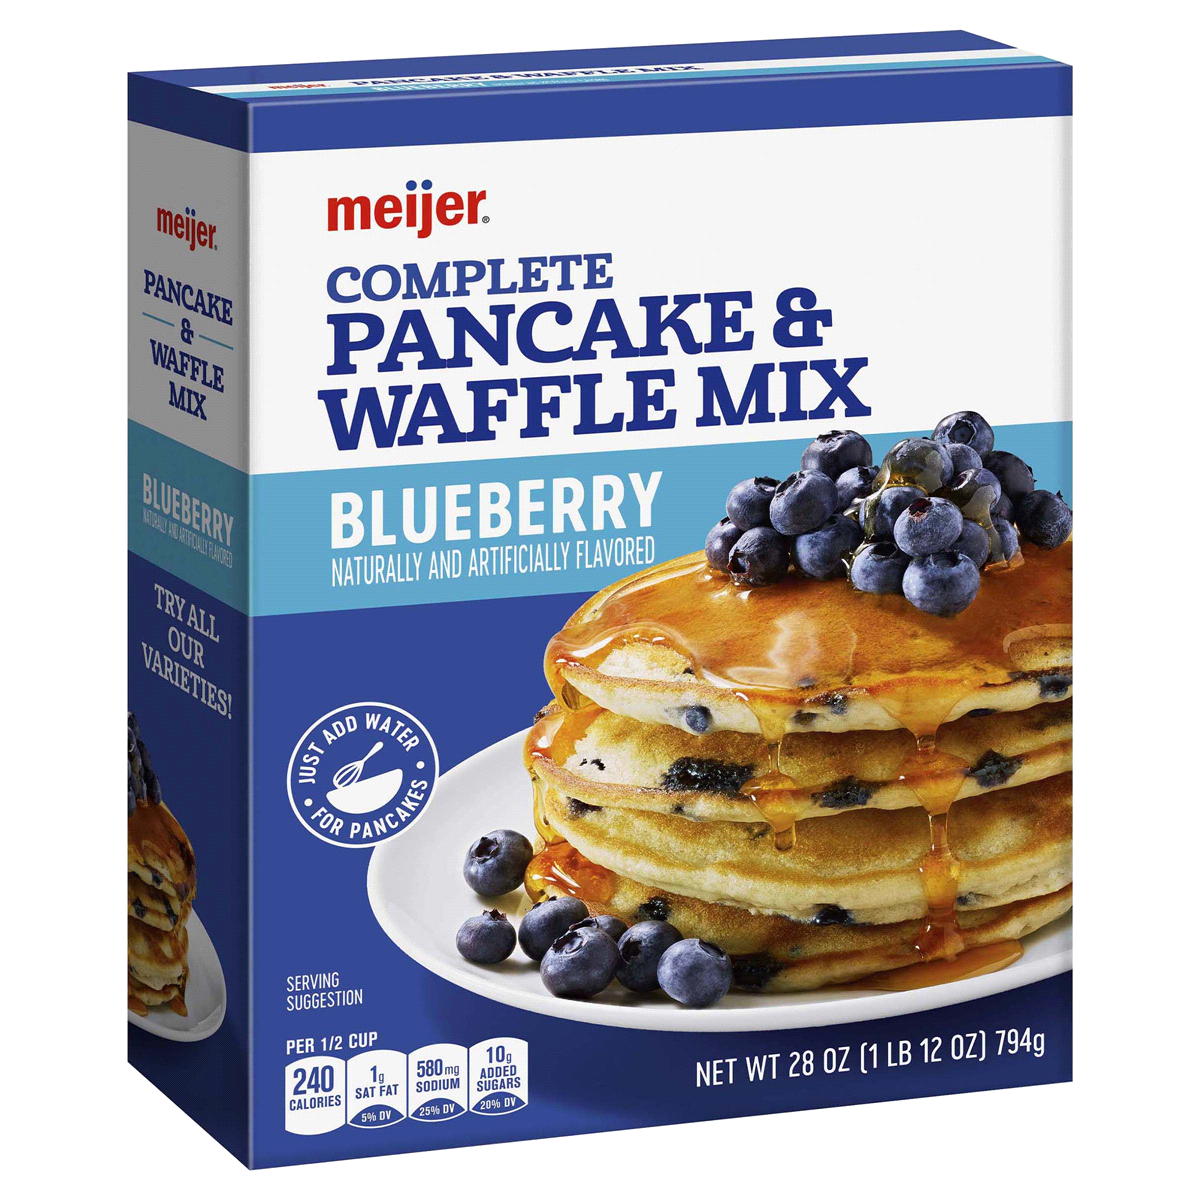 slide 21 of 29, Meijer Blueberry Pancake & Waffle Mix, 28 oz